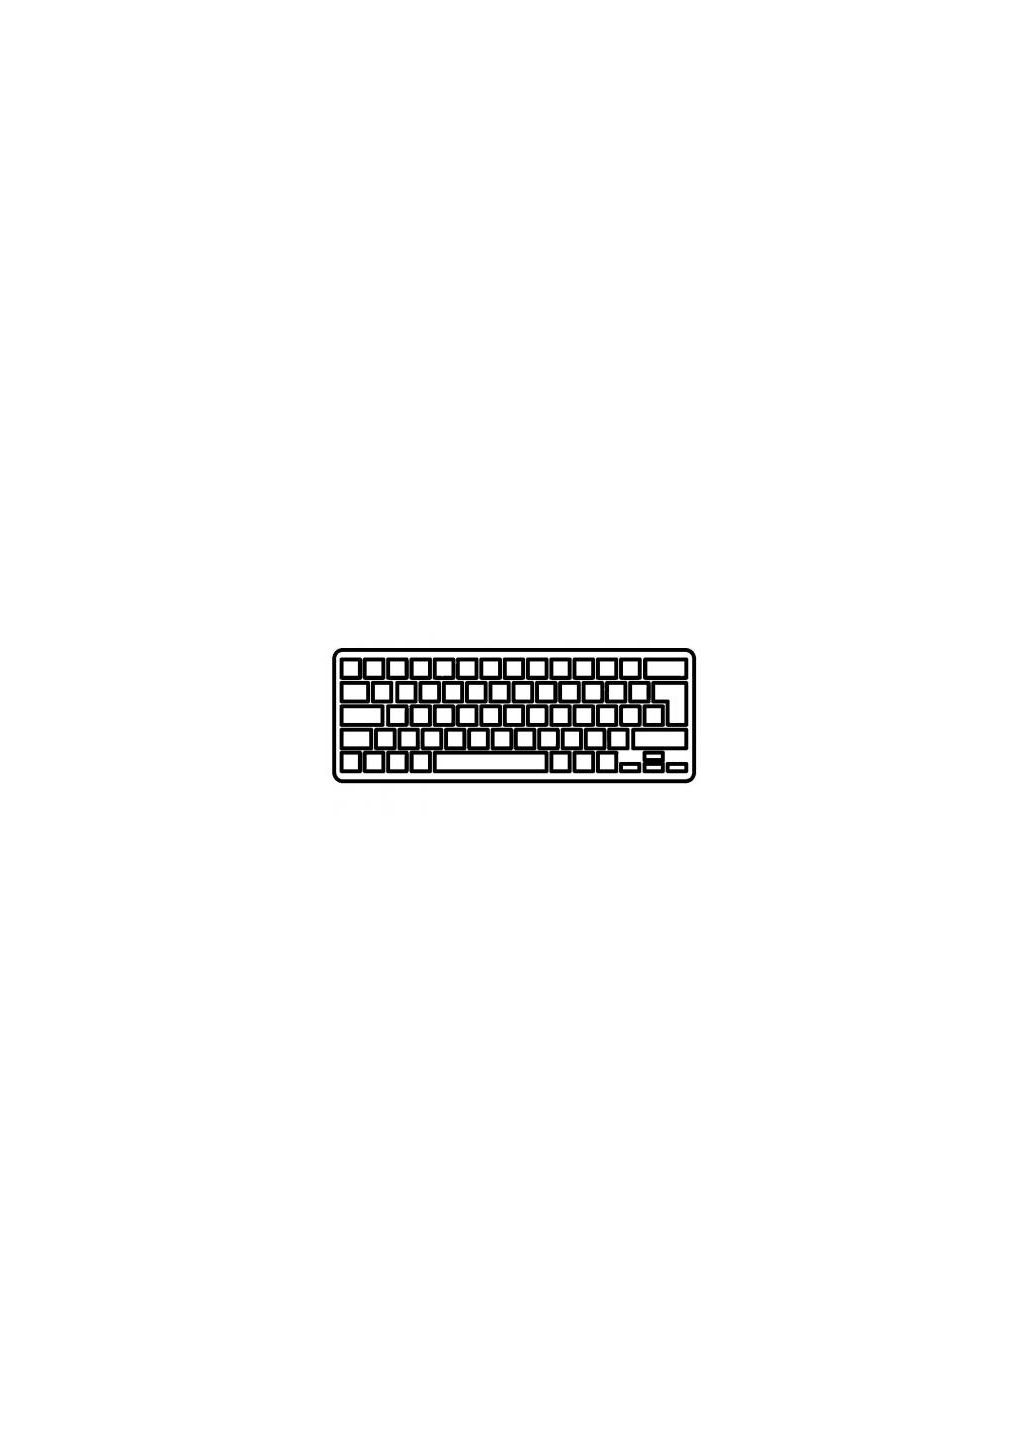 Клавиатура ноутбука Inspiron M101z Series черная с красной рамкой RU (A43281) Dell inspiron m101z series черная с красной рамкой ua (276708045)